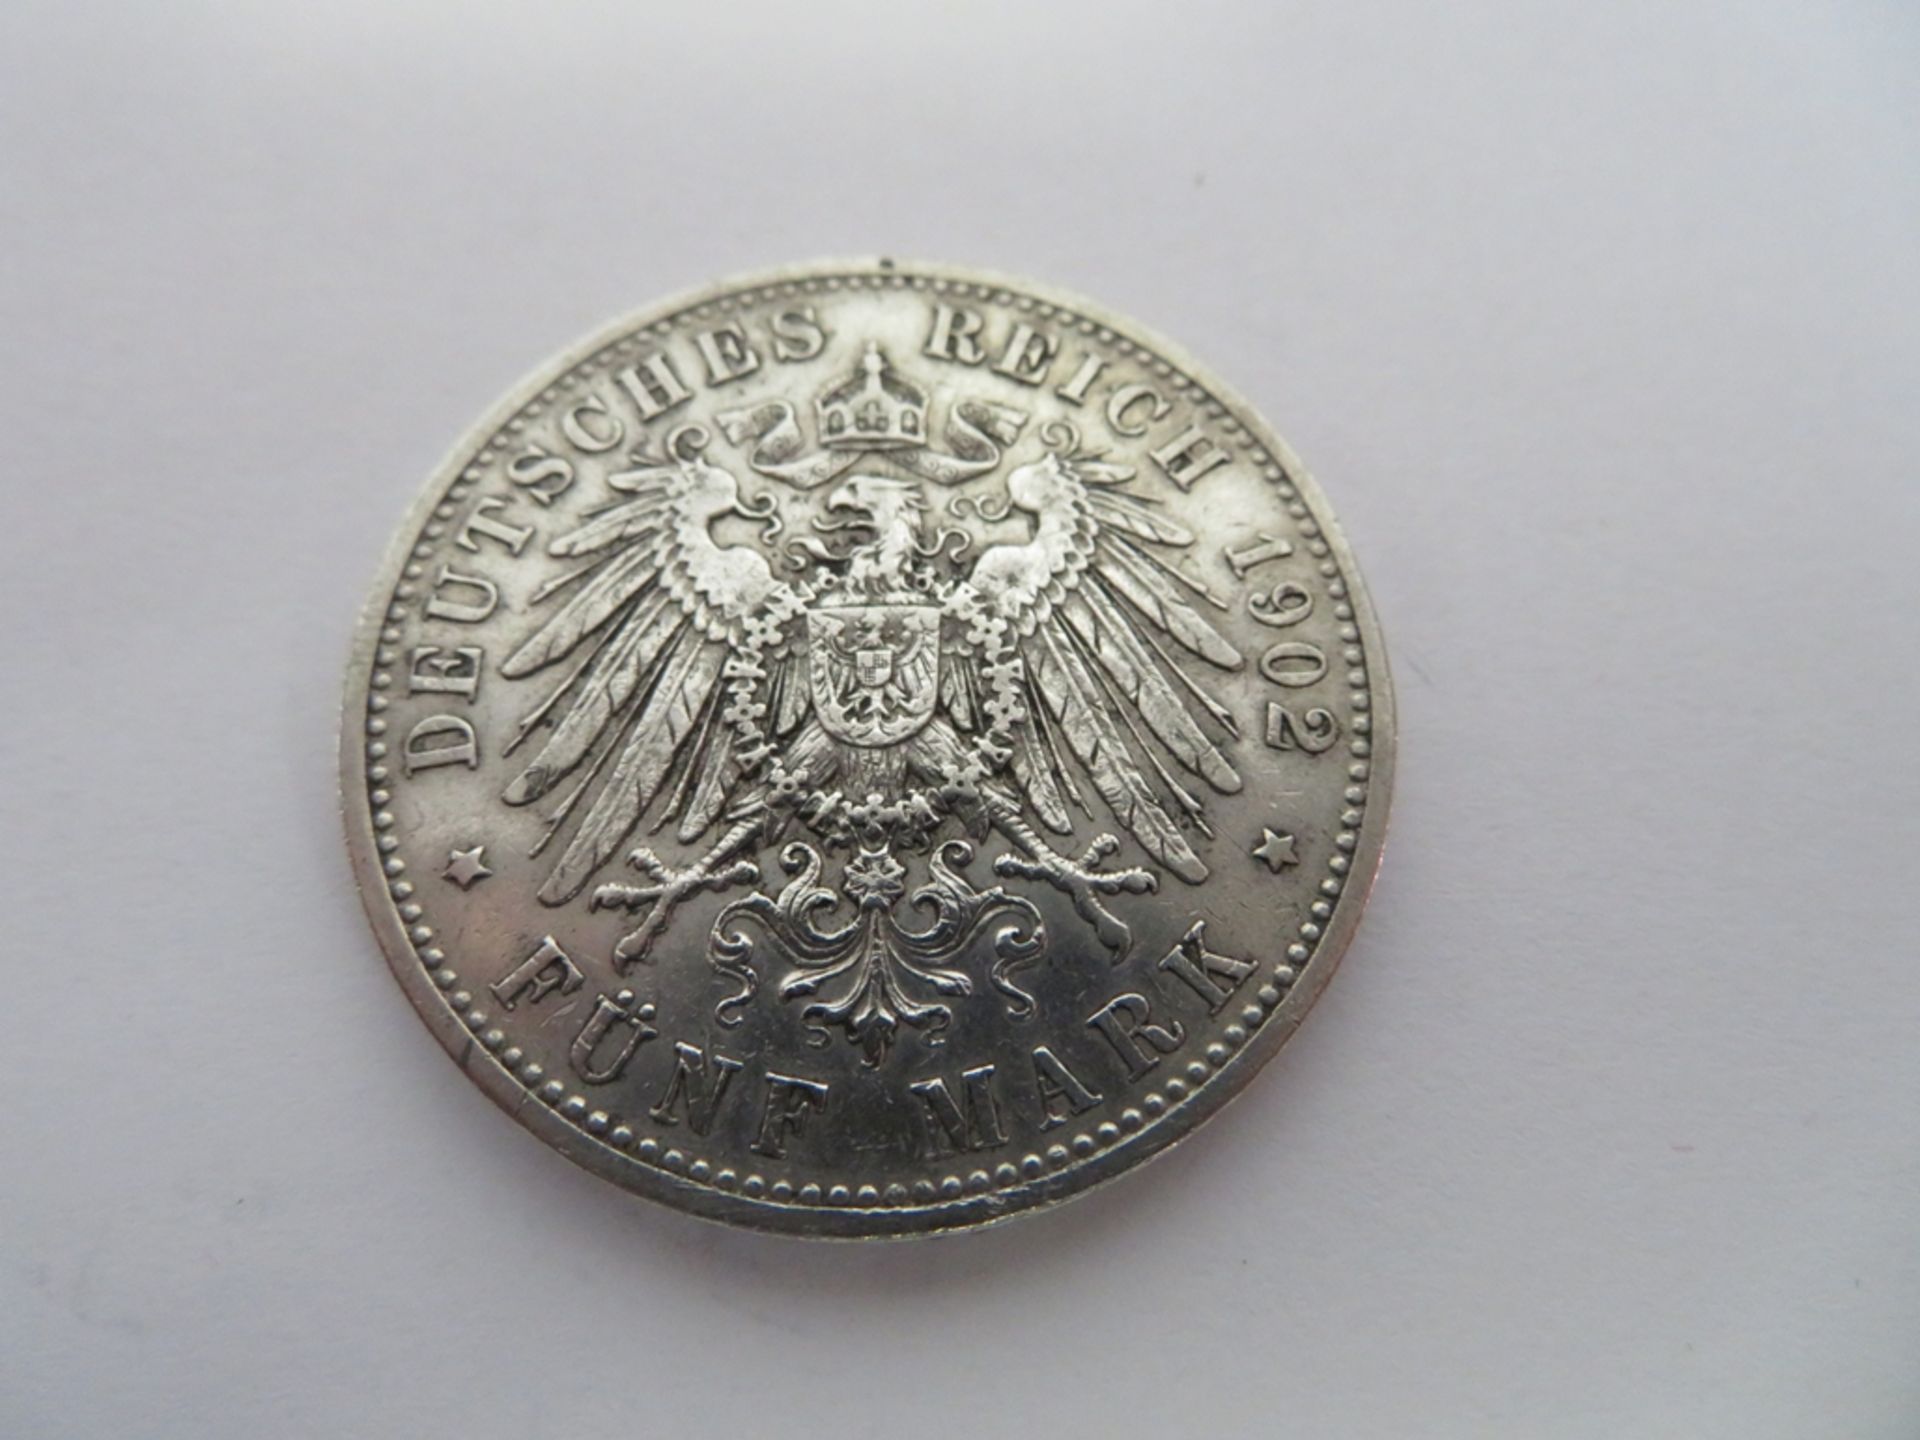 Silbermünze, 5 Mark, 1902 D, Otto König von Bayern, 1886 - 1913, d 3,9 cm. - Image 2 of 2